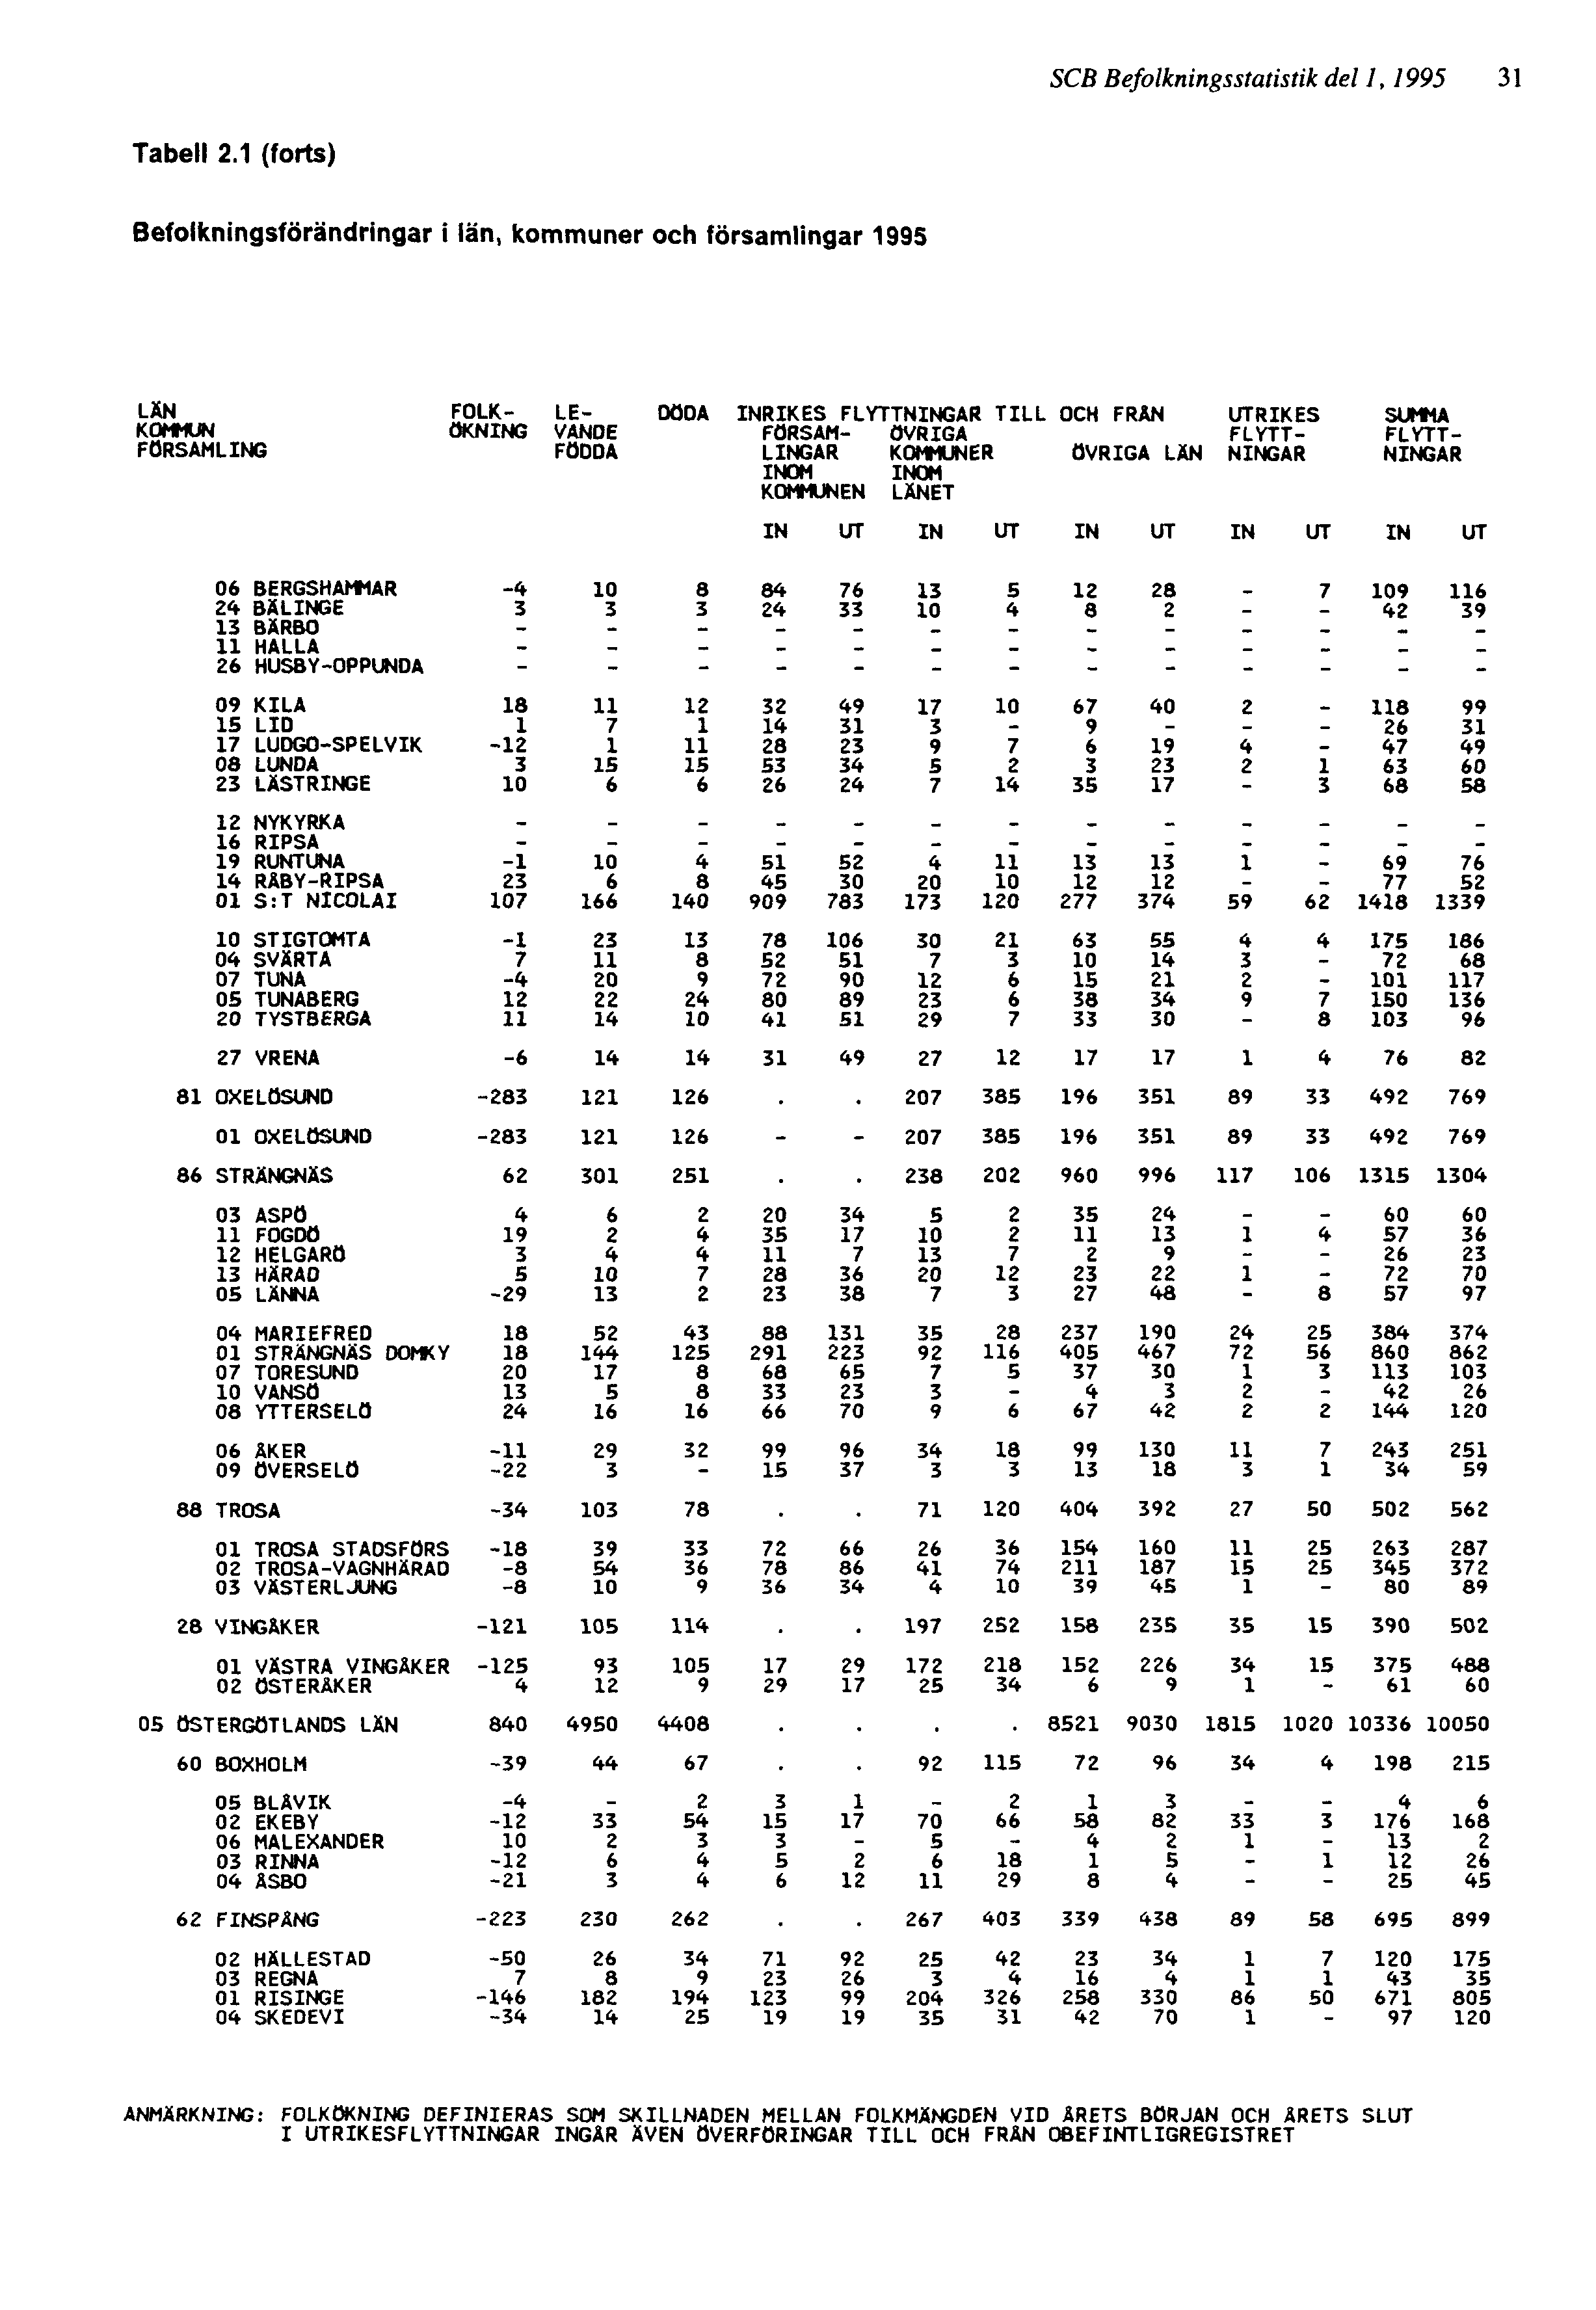 SCB Befolkningsstatistik del 1, 1995 31 ANMÄRKNING: FOLKÖKNING DEFINIERAS SOM SKILLNADEN MELLAN FOLKMÄNGDEN